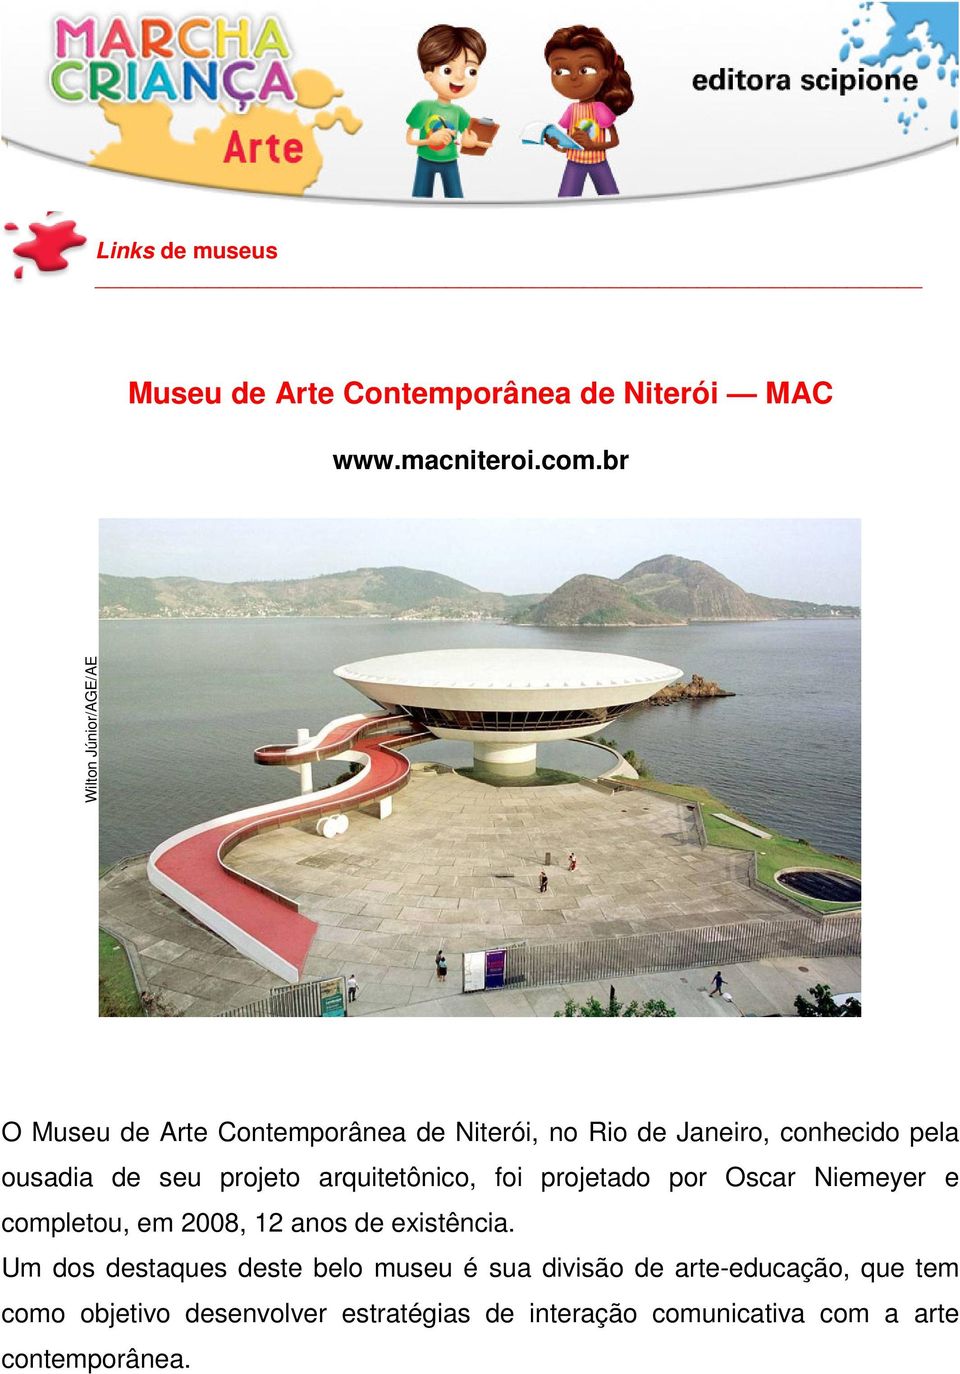 seu projeto arquitetônico, foi projetado por Oscar Niemeyer e completou, em 2008, 12 anos de existência.